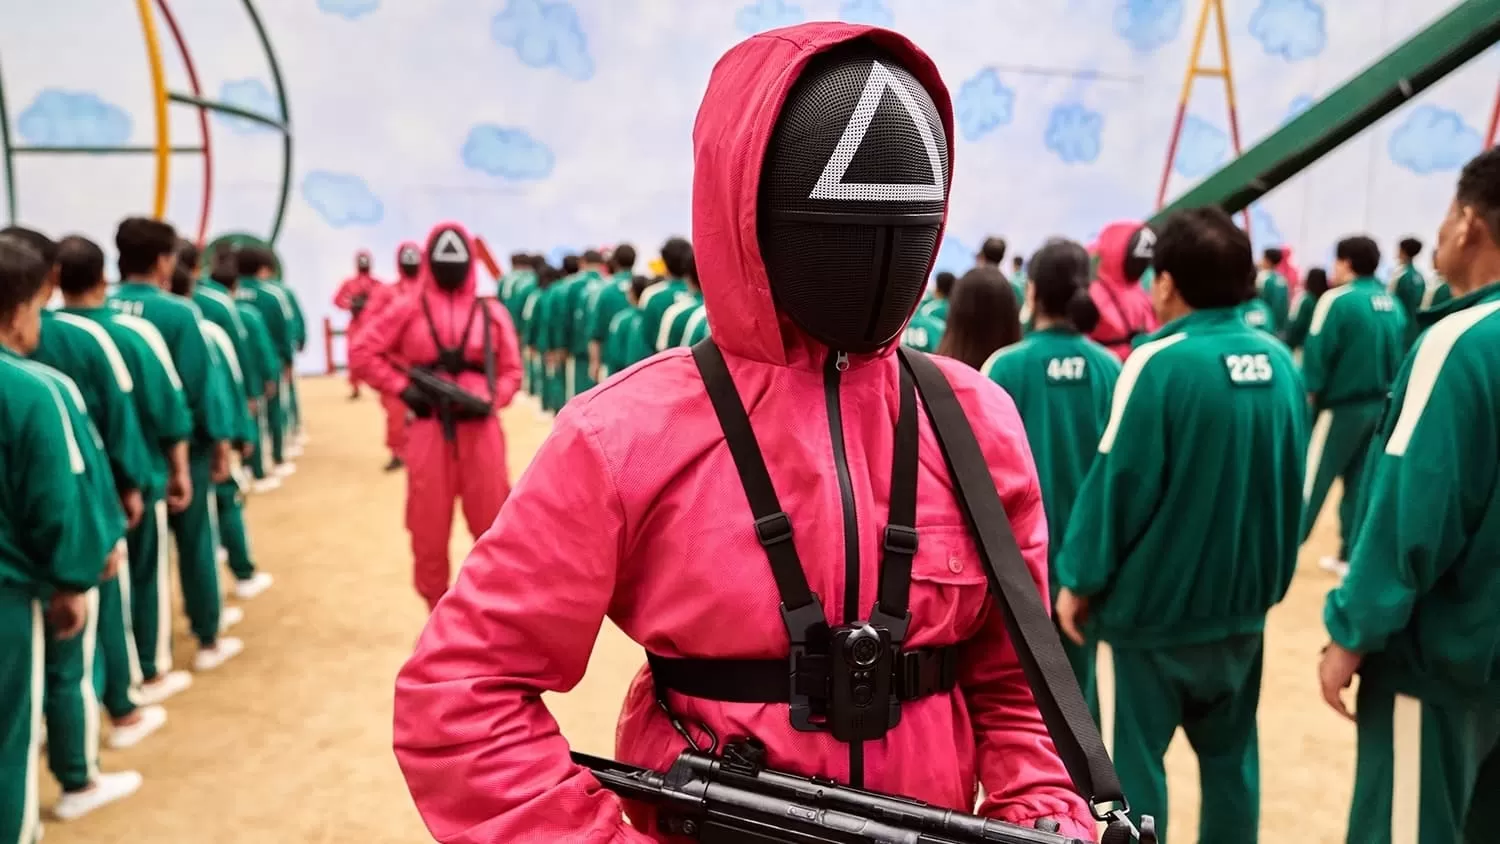 Trecho da série Round 6 da Netflix, com uma pessoa vestida com um macacão vermelho, segurando uma arma, e ao fundo uma fila de pessoas de macacão verde